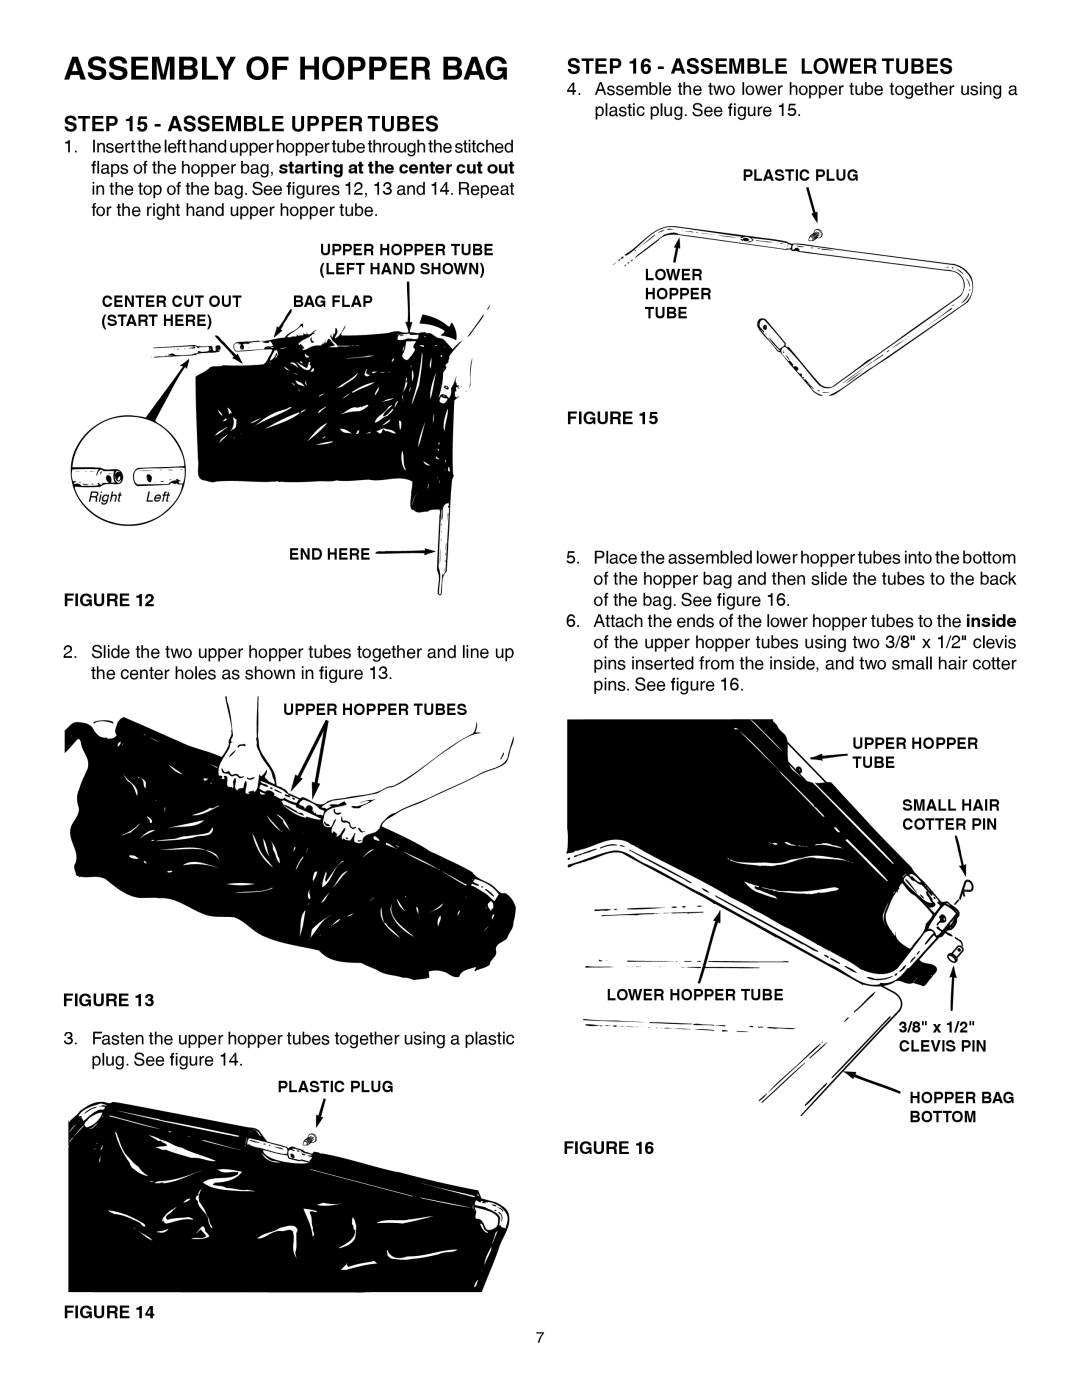 Husqvarna 45-0352 manual Assembly Of Hopper Bag, Assemble Upper Tubes, Assemble Lower Tubes 